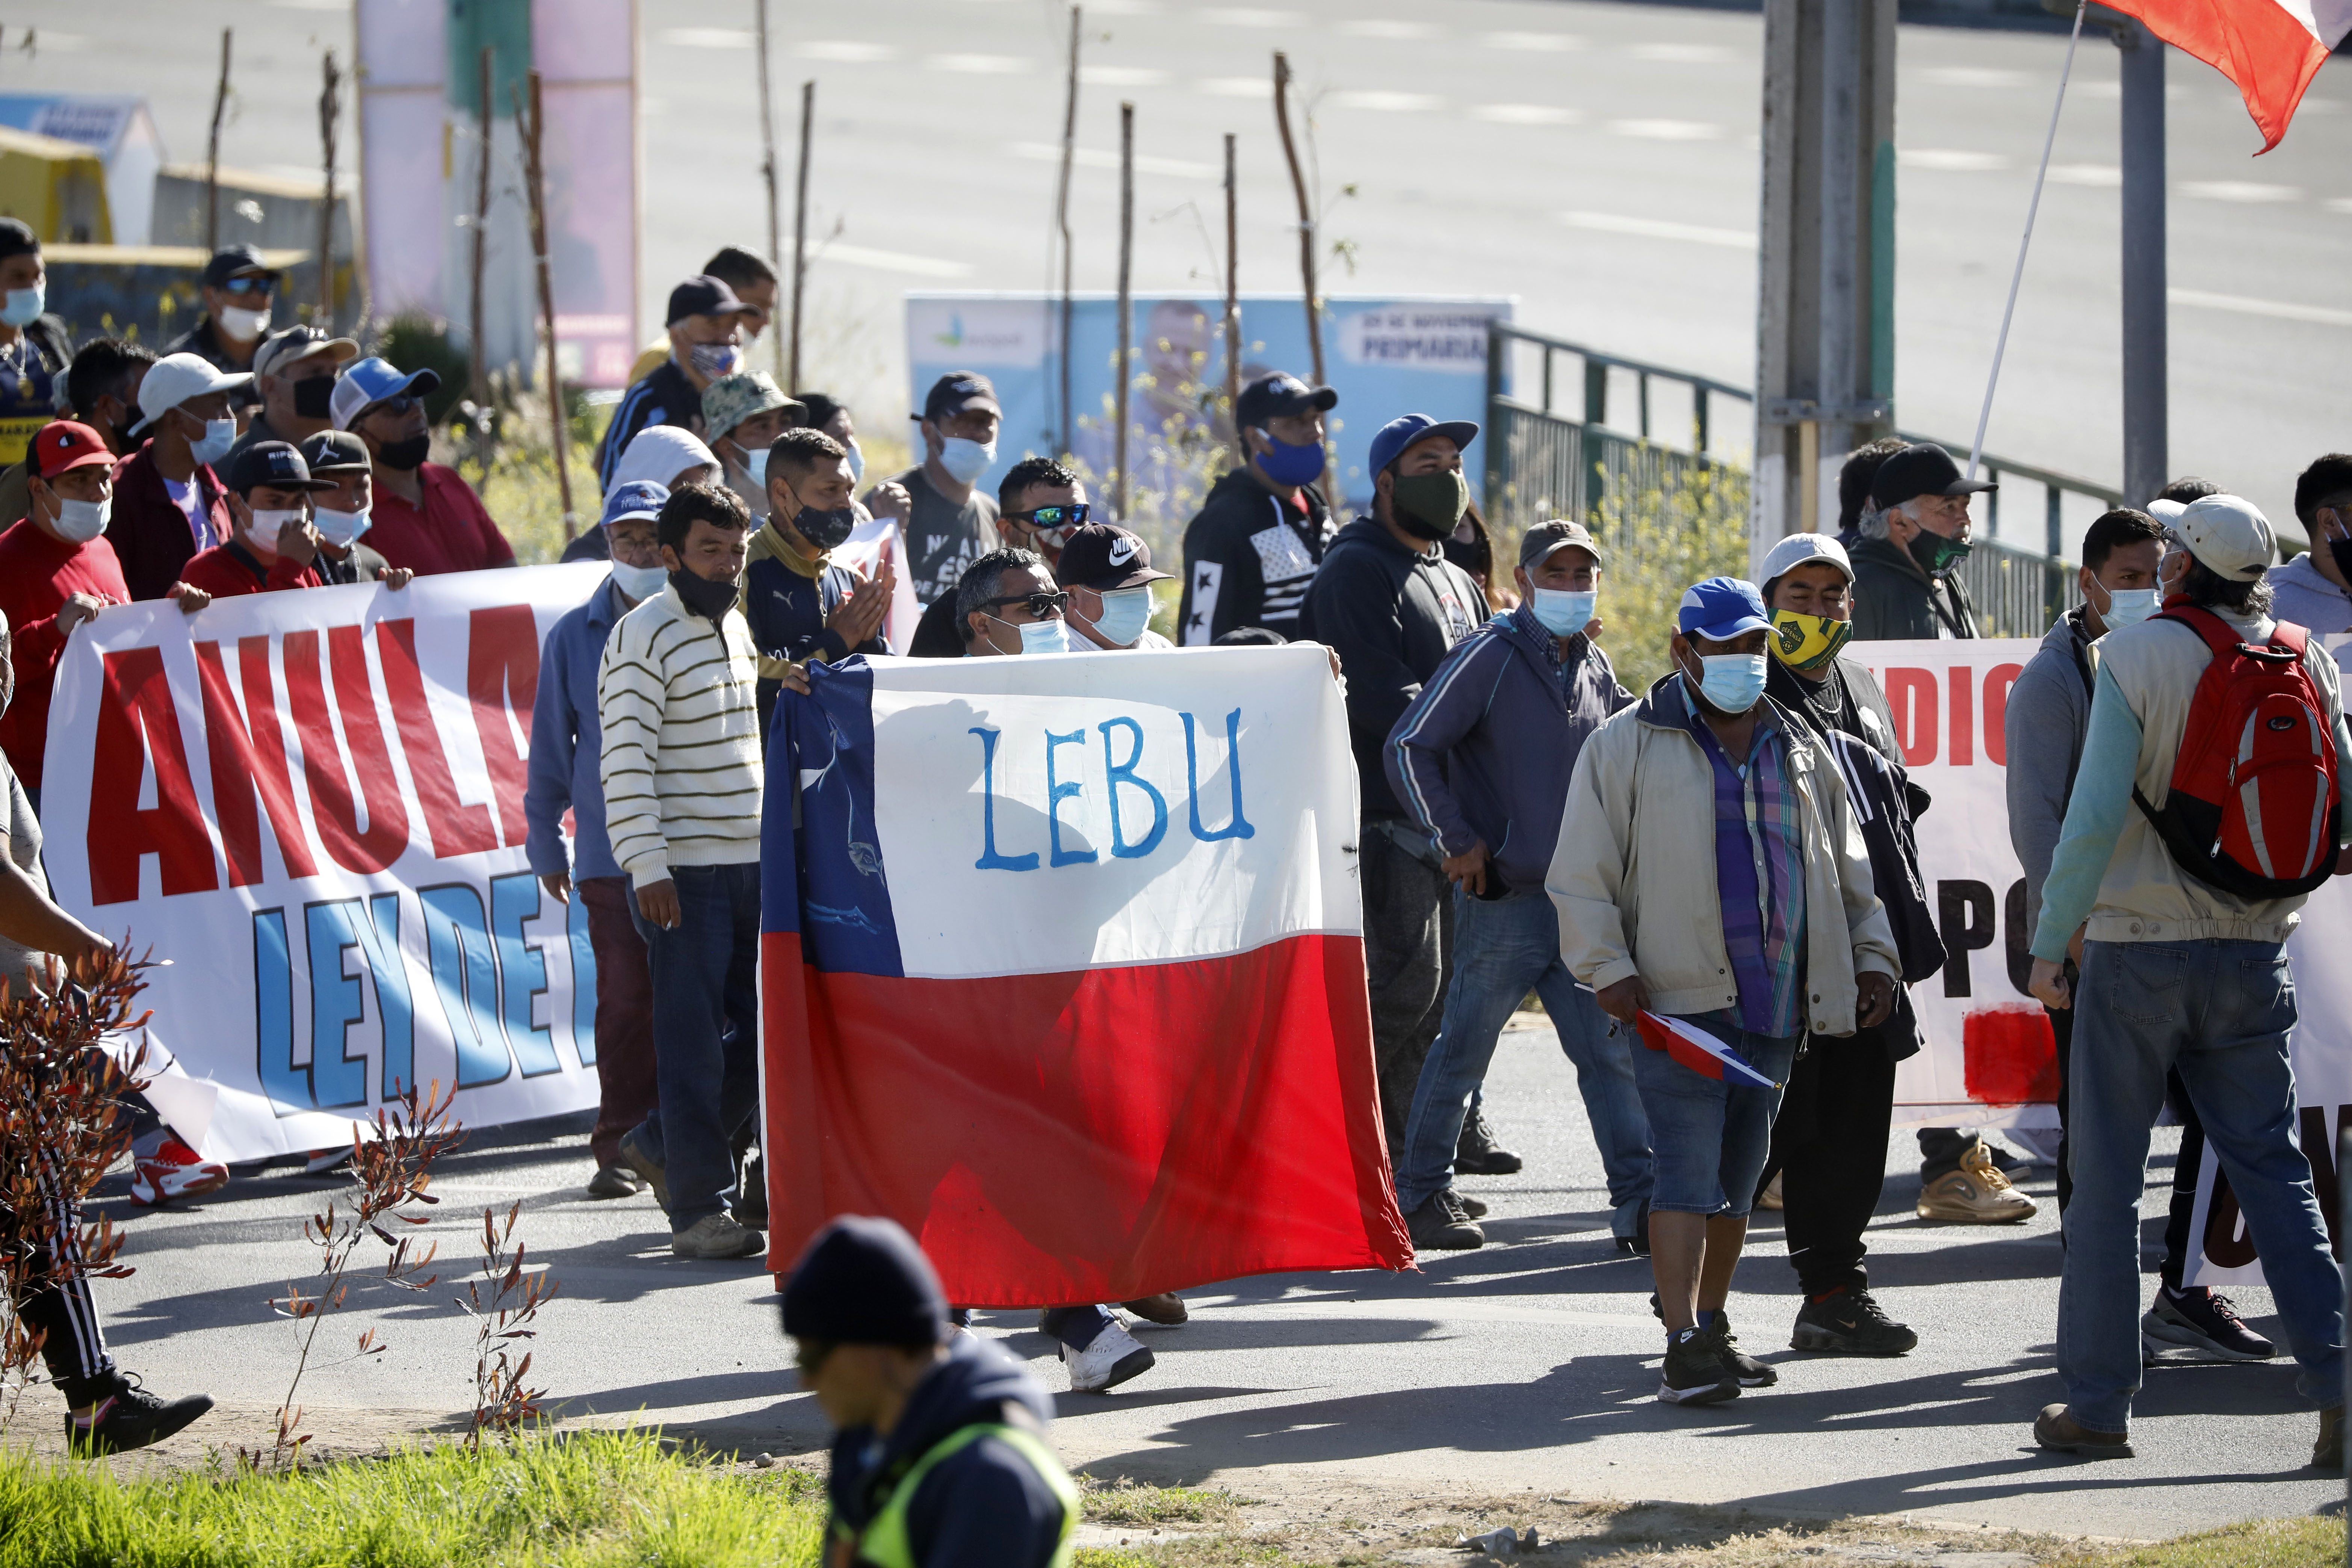 Valparaiso, 24 de noviembre de 2020
Organizaciones de pescadores artesanales marchan desde Caleta Portales hasta el Congreso Nacional, donde se votara para que se apruebe la nulidad a la denominada Ley de Pesca.